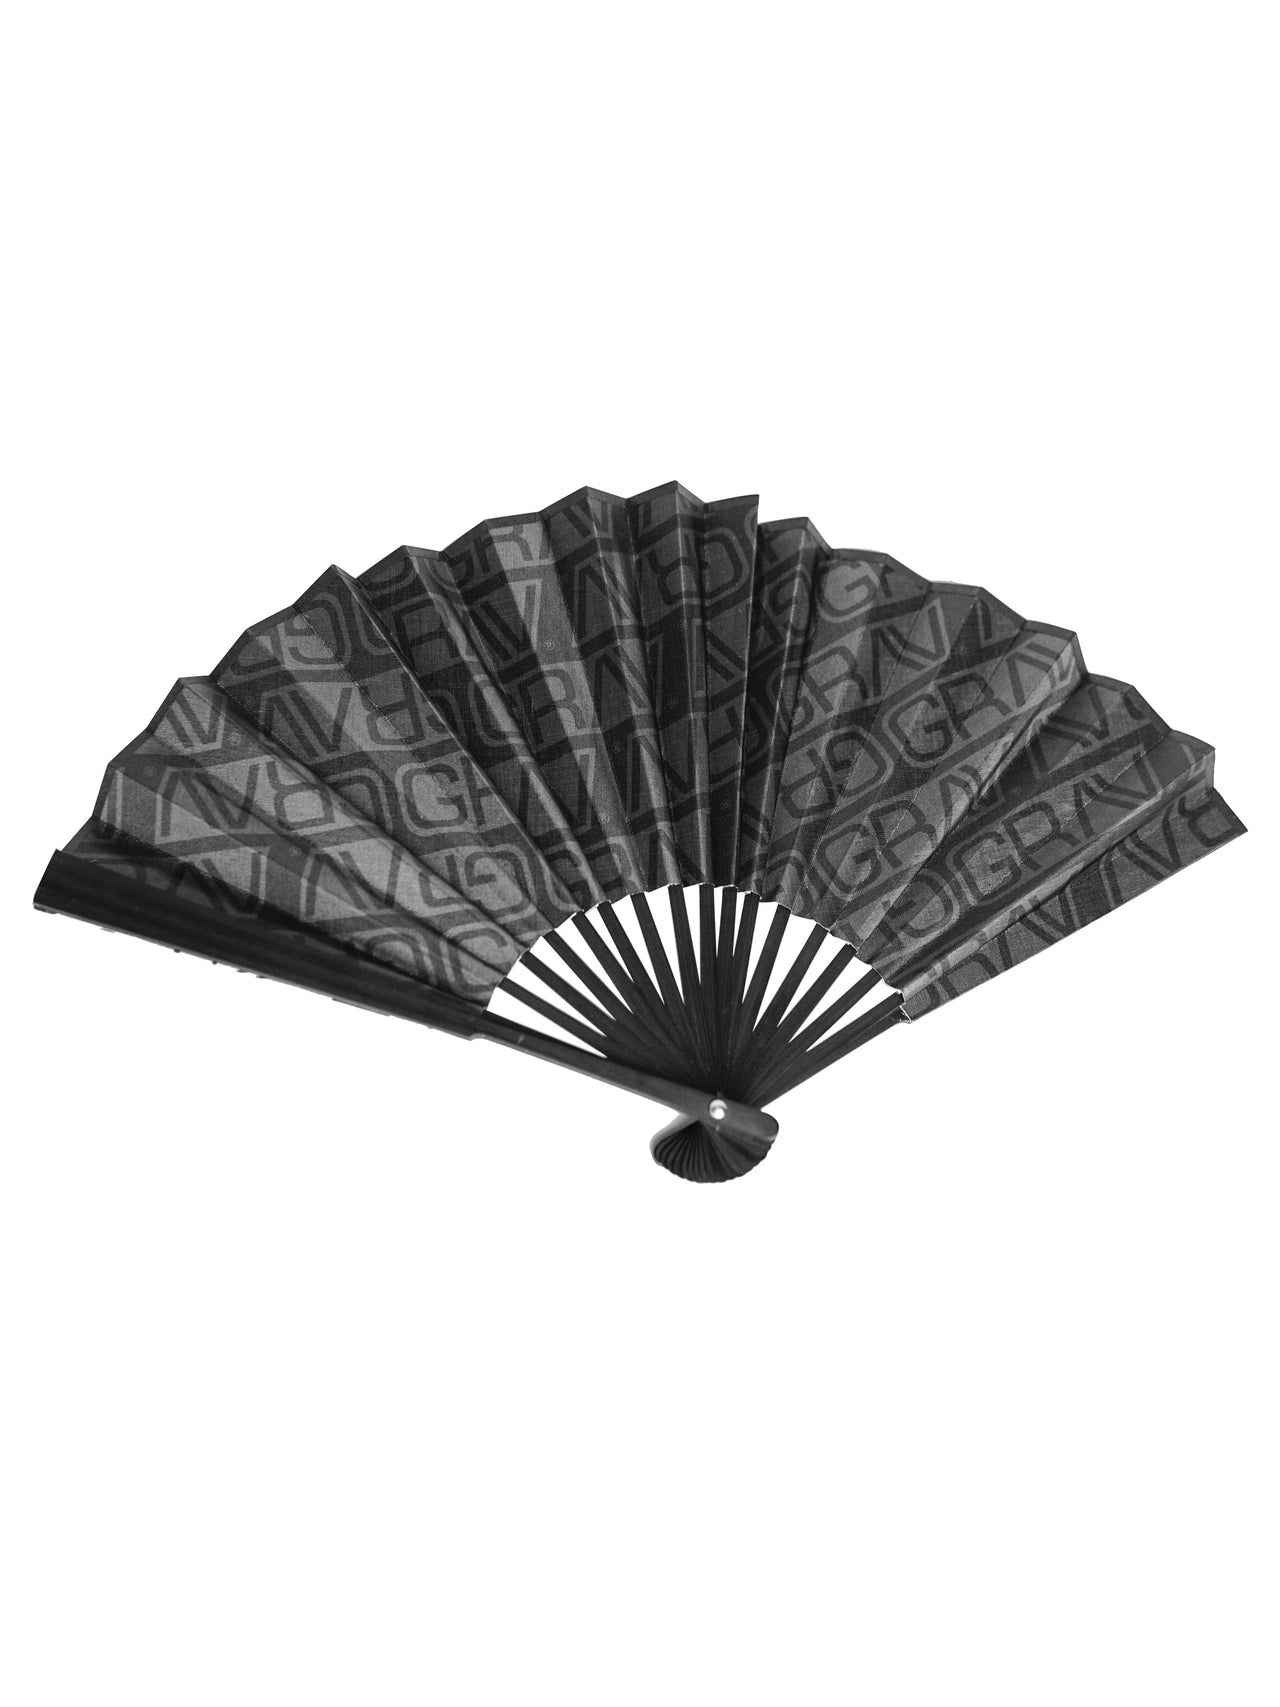 GRAV® Folding Hand Fan | General Merch | 420 Science